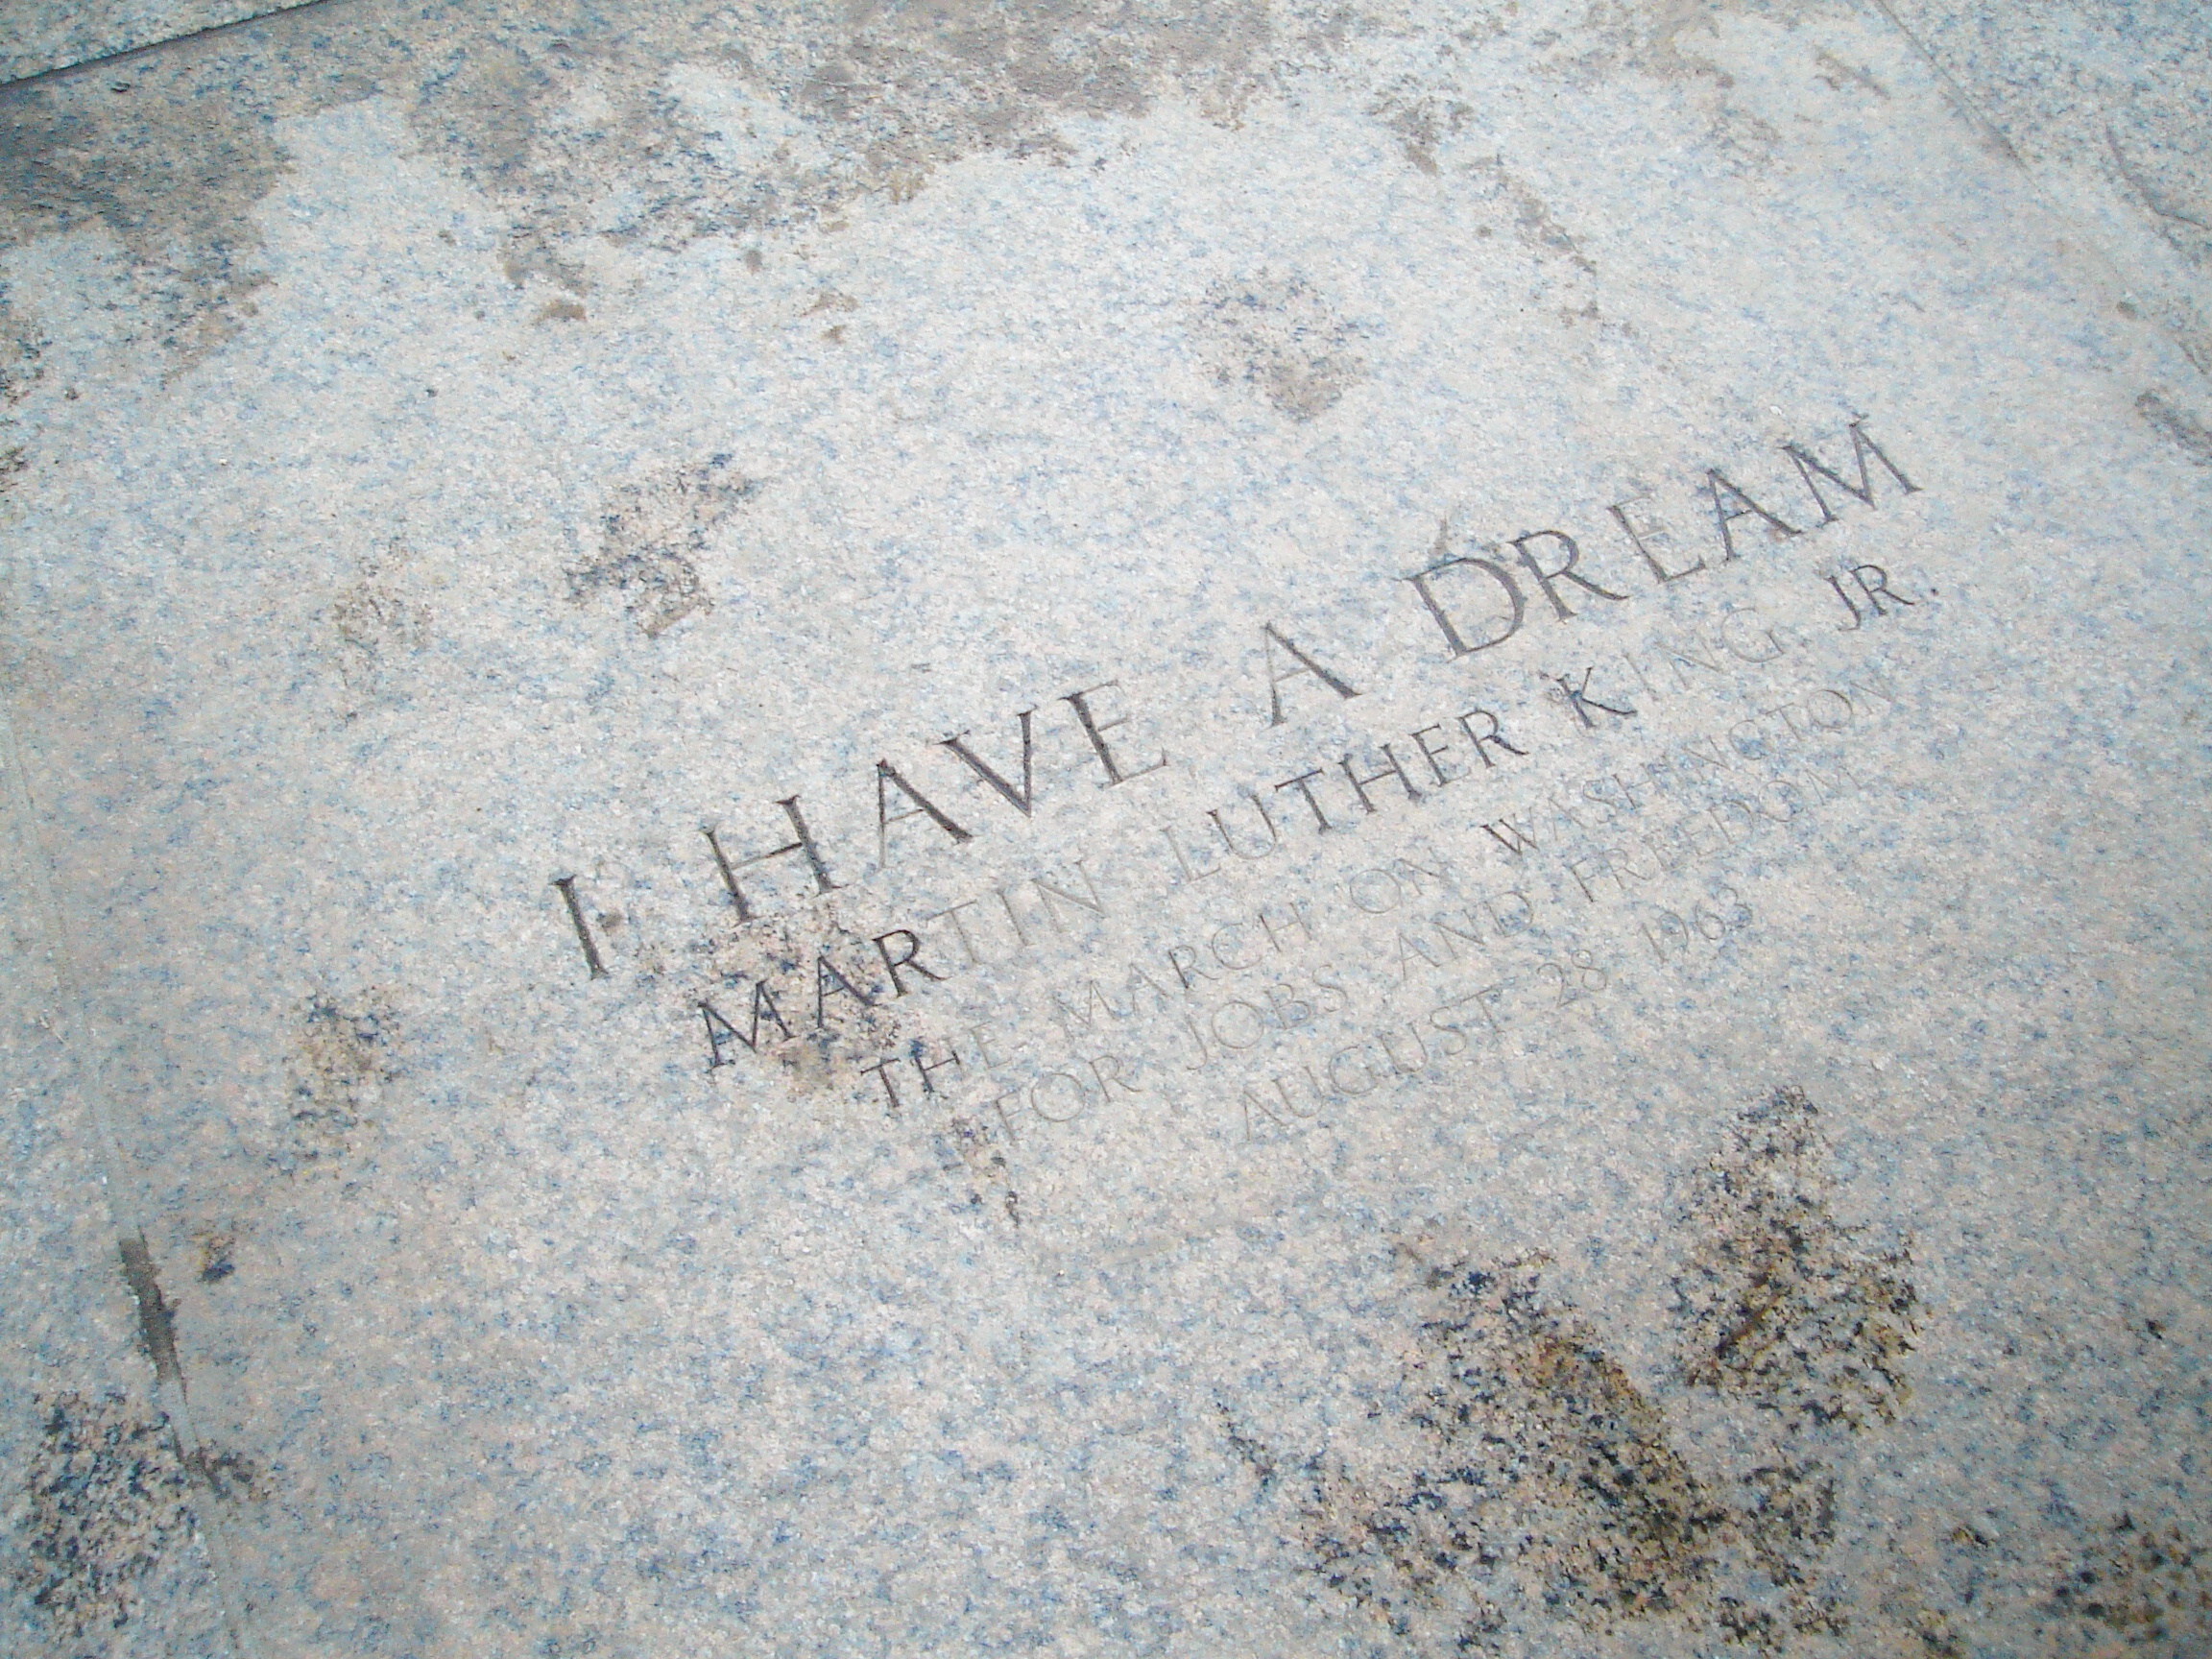 MLK Inscription